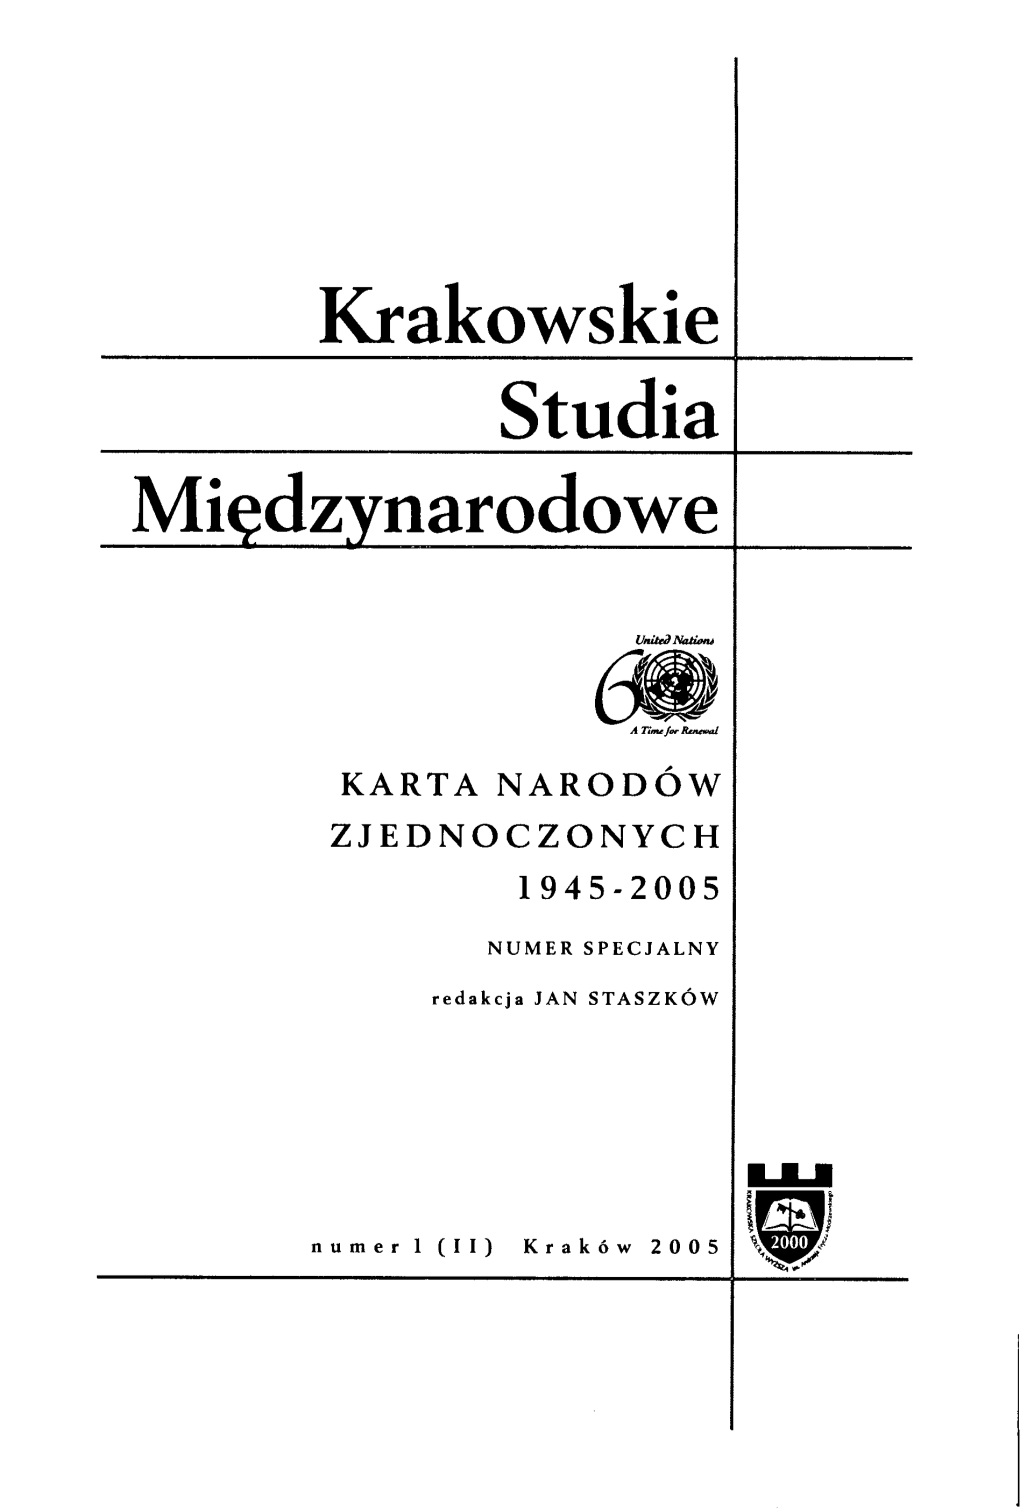 Krakowskie Studia Międzynarodowe